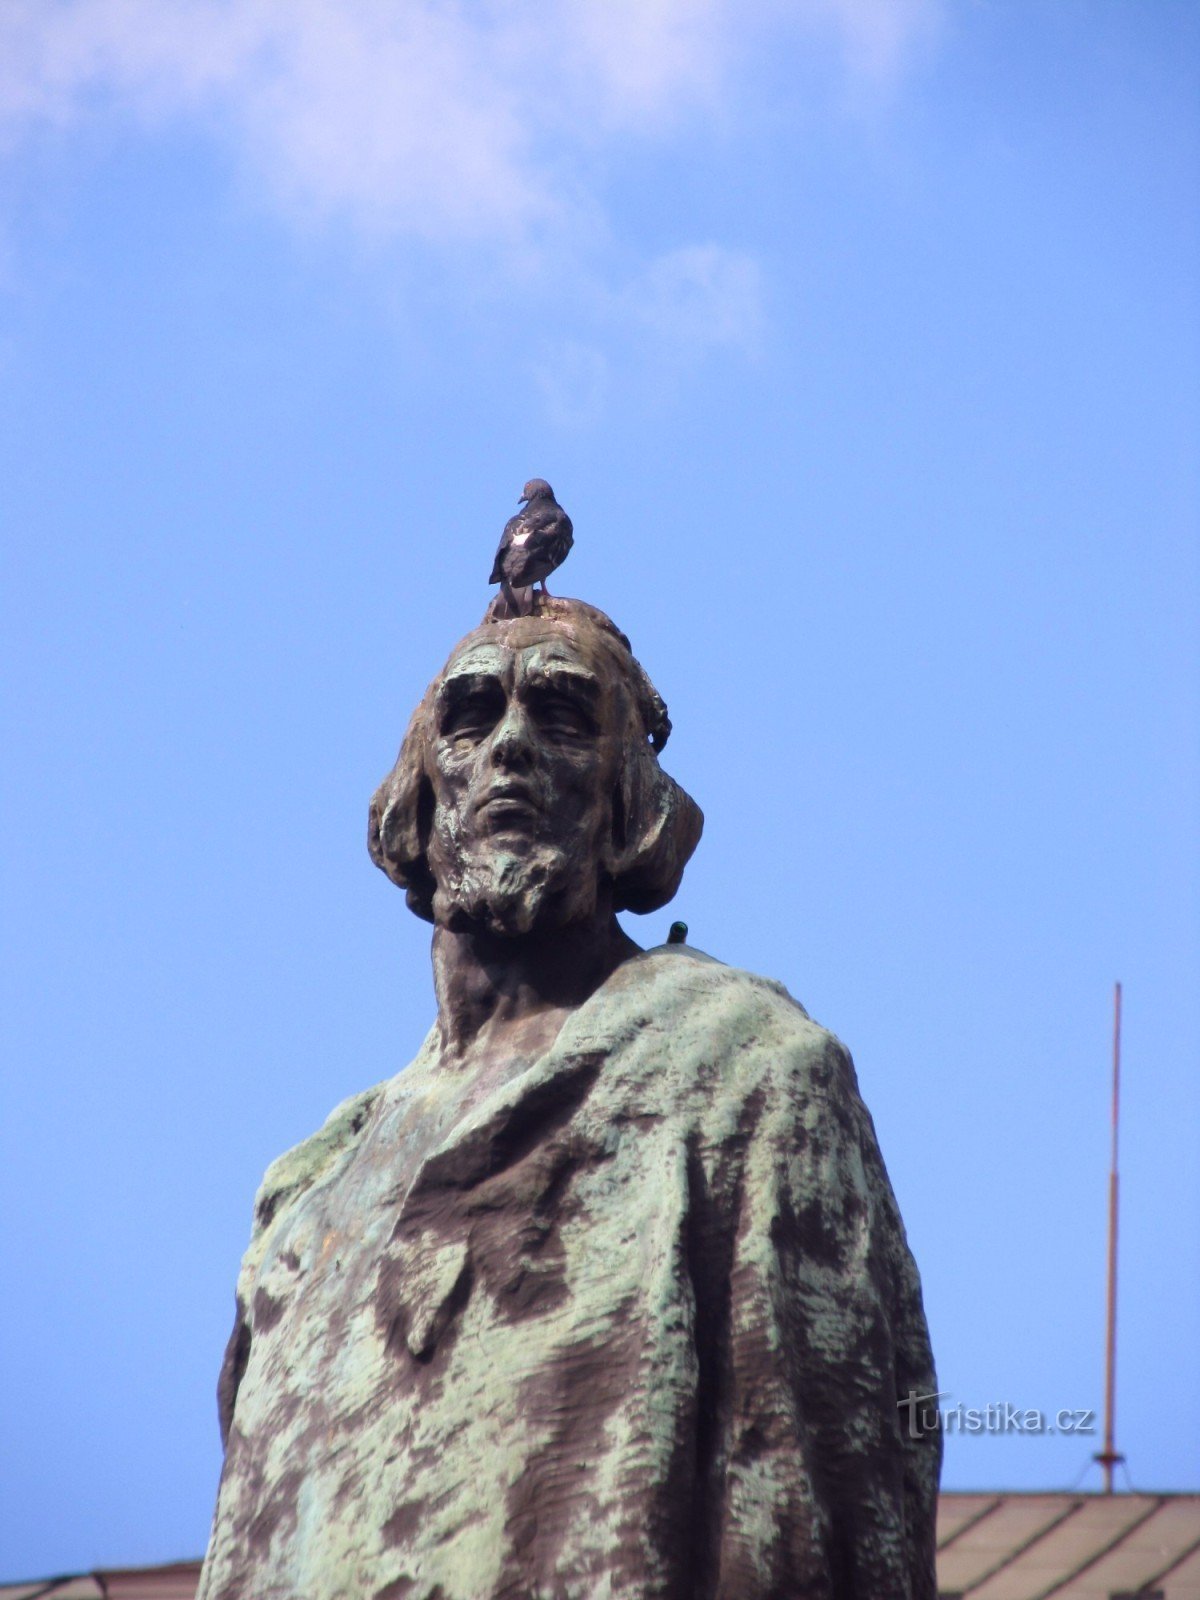 Spomenik mojstru Janu Husu na Staromestnem trgu v Pragi